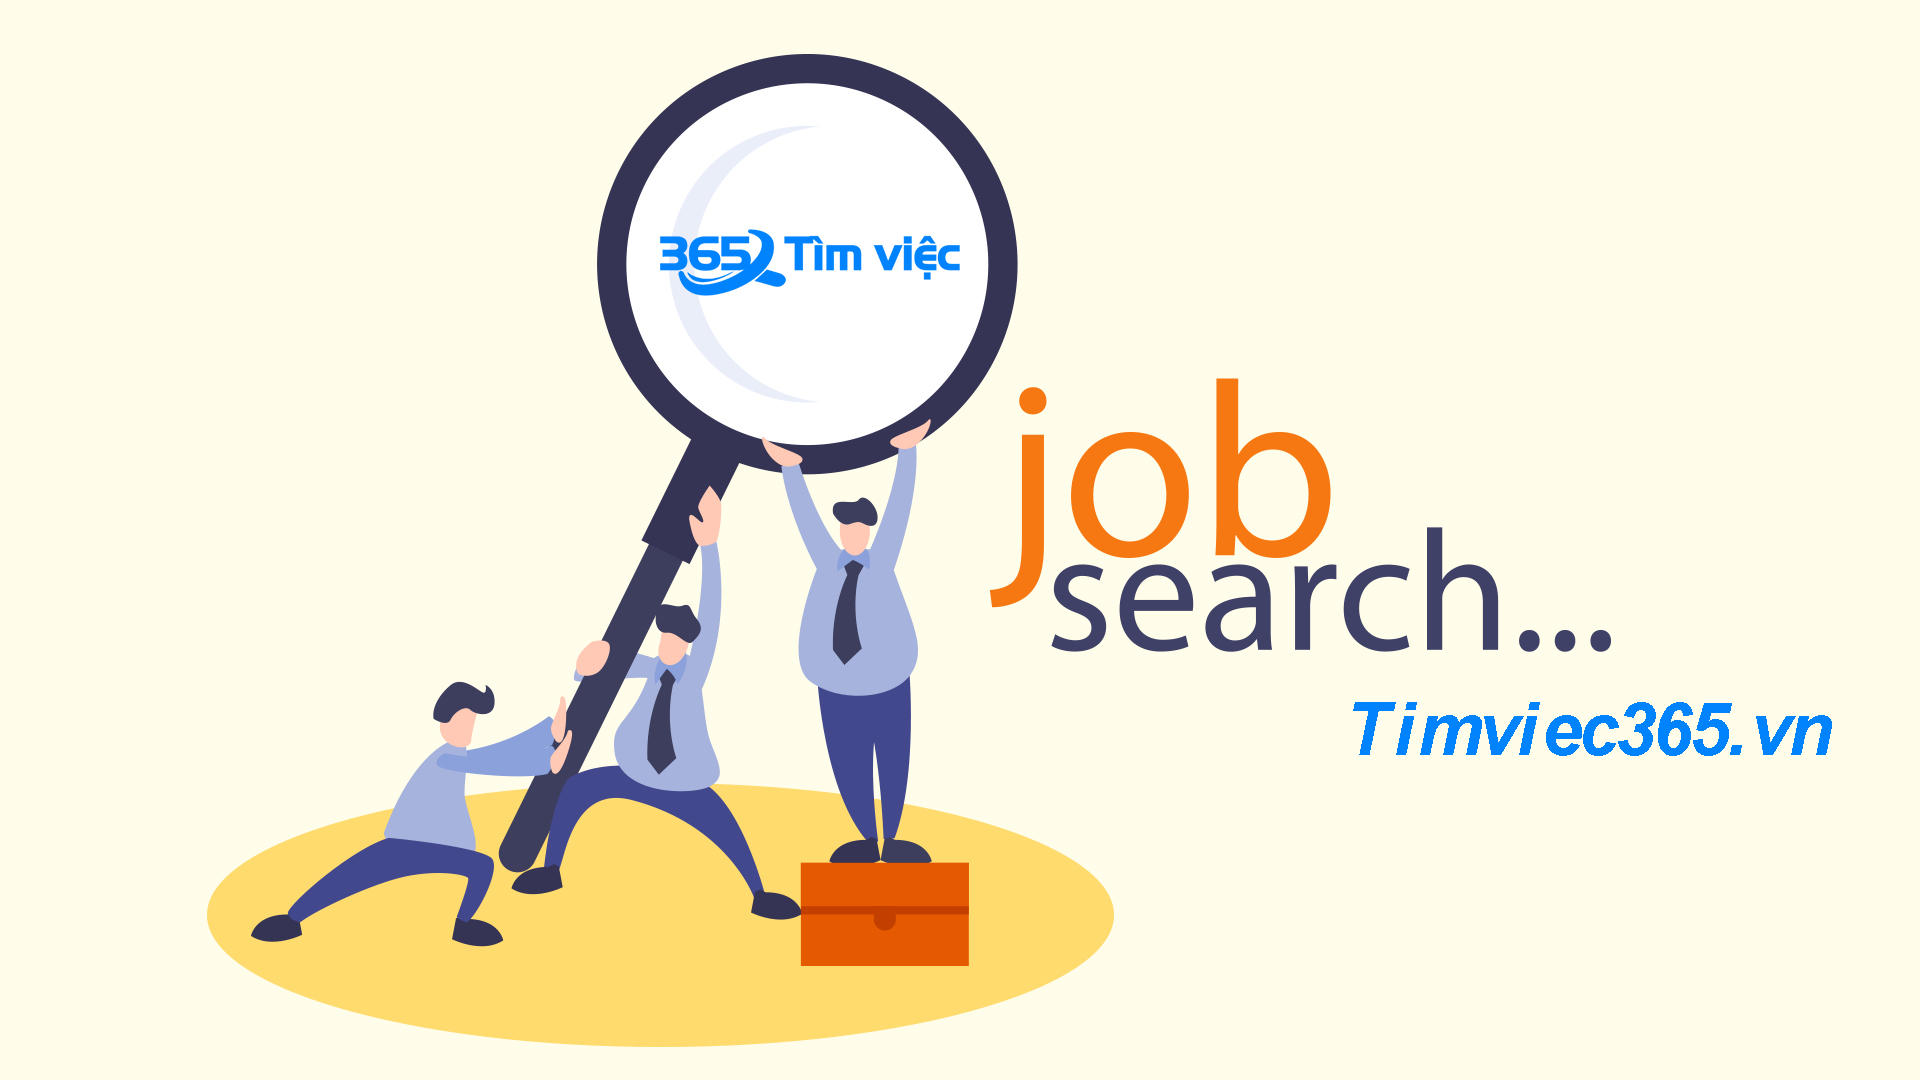 Timviec365.vn mang đến cơ hội việc làm cho người lao động?